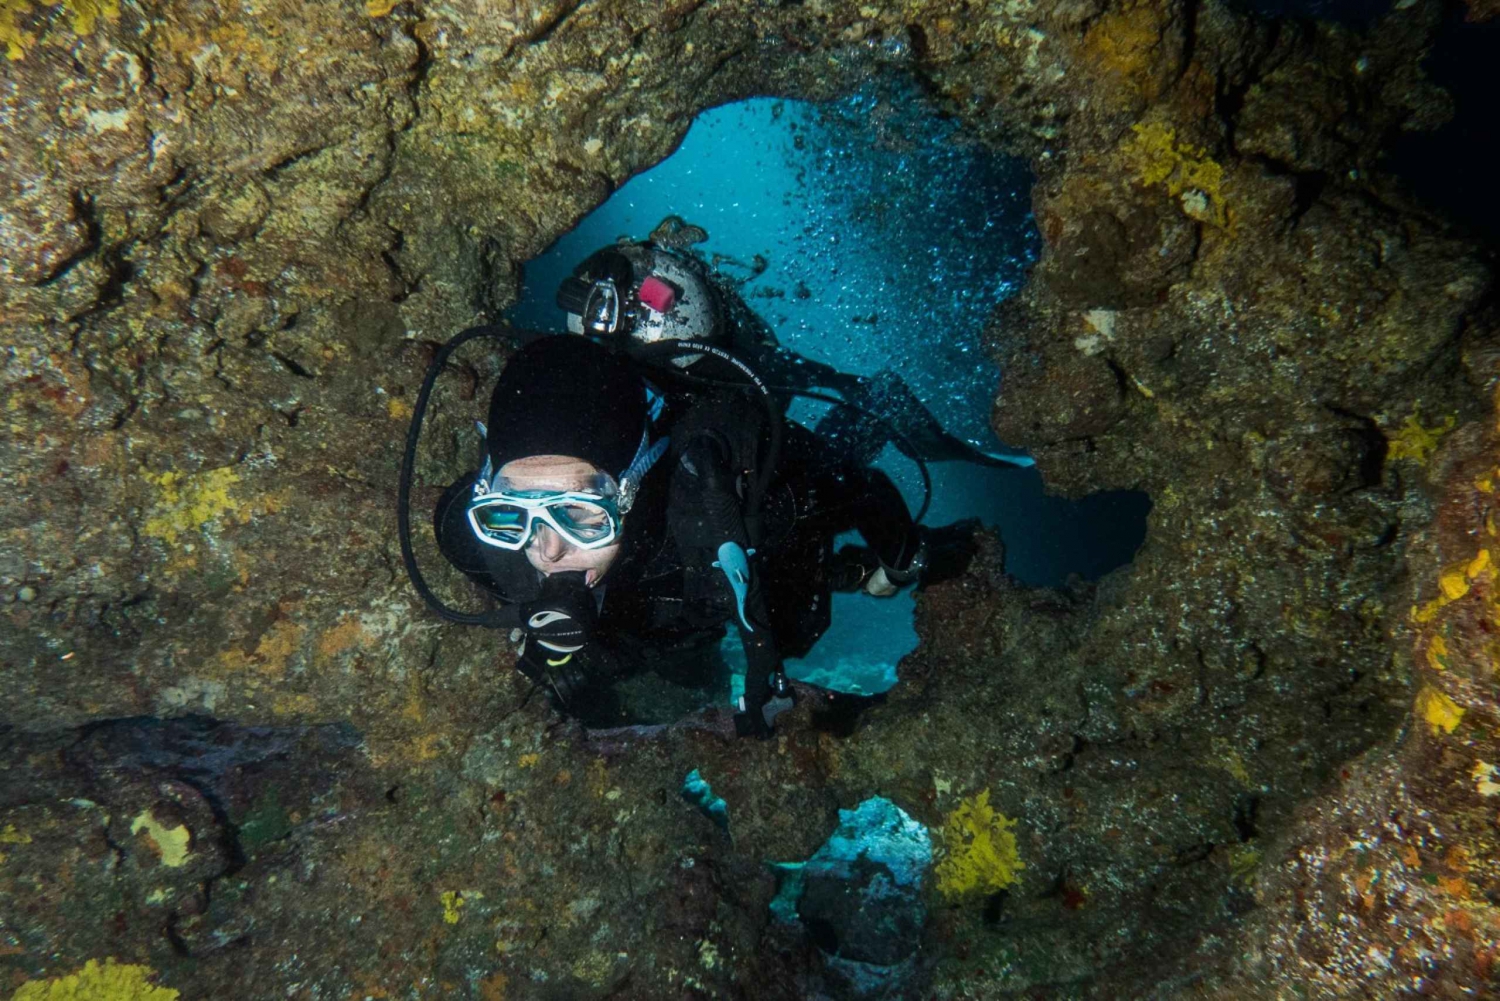 Maui: immersione ecologica per subacquei certificati